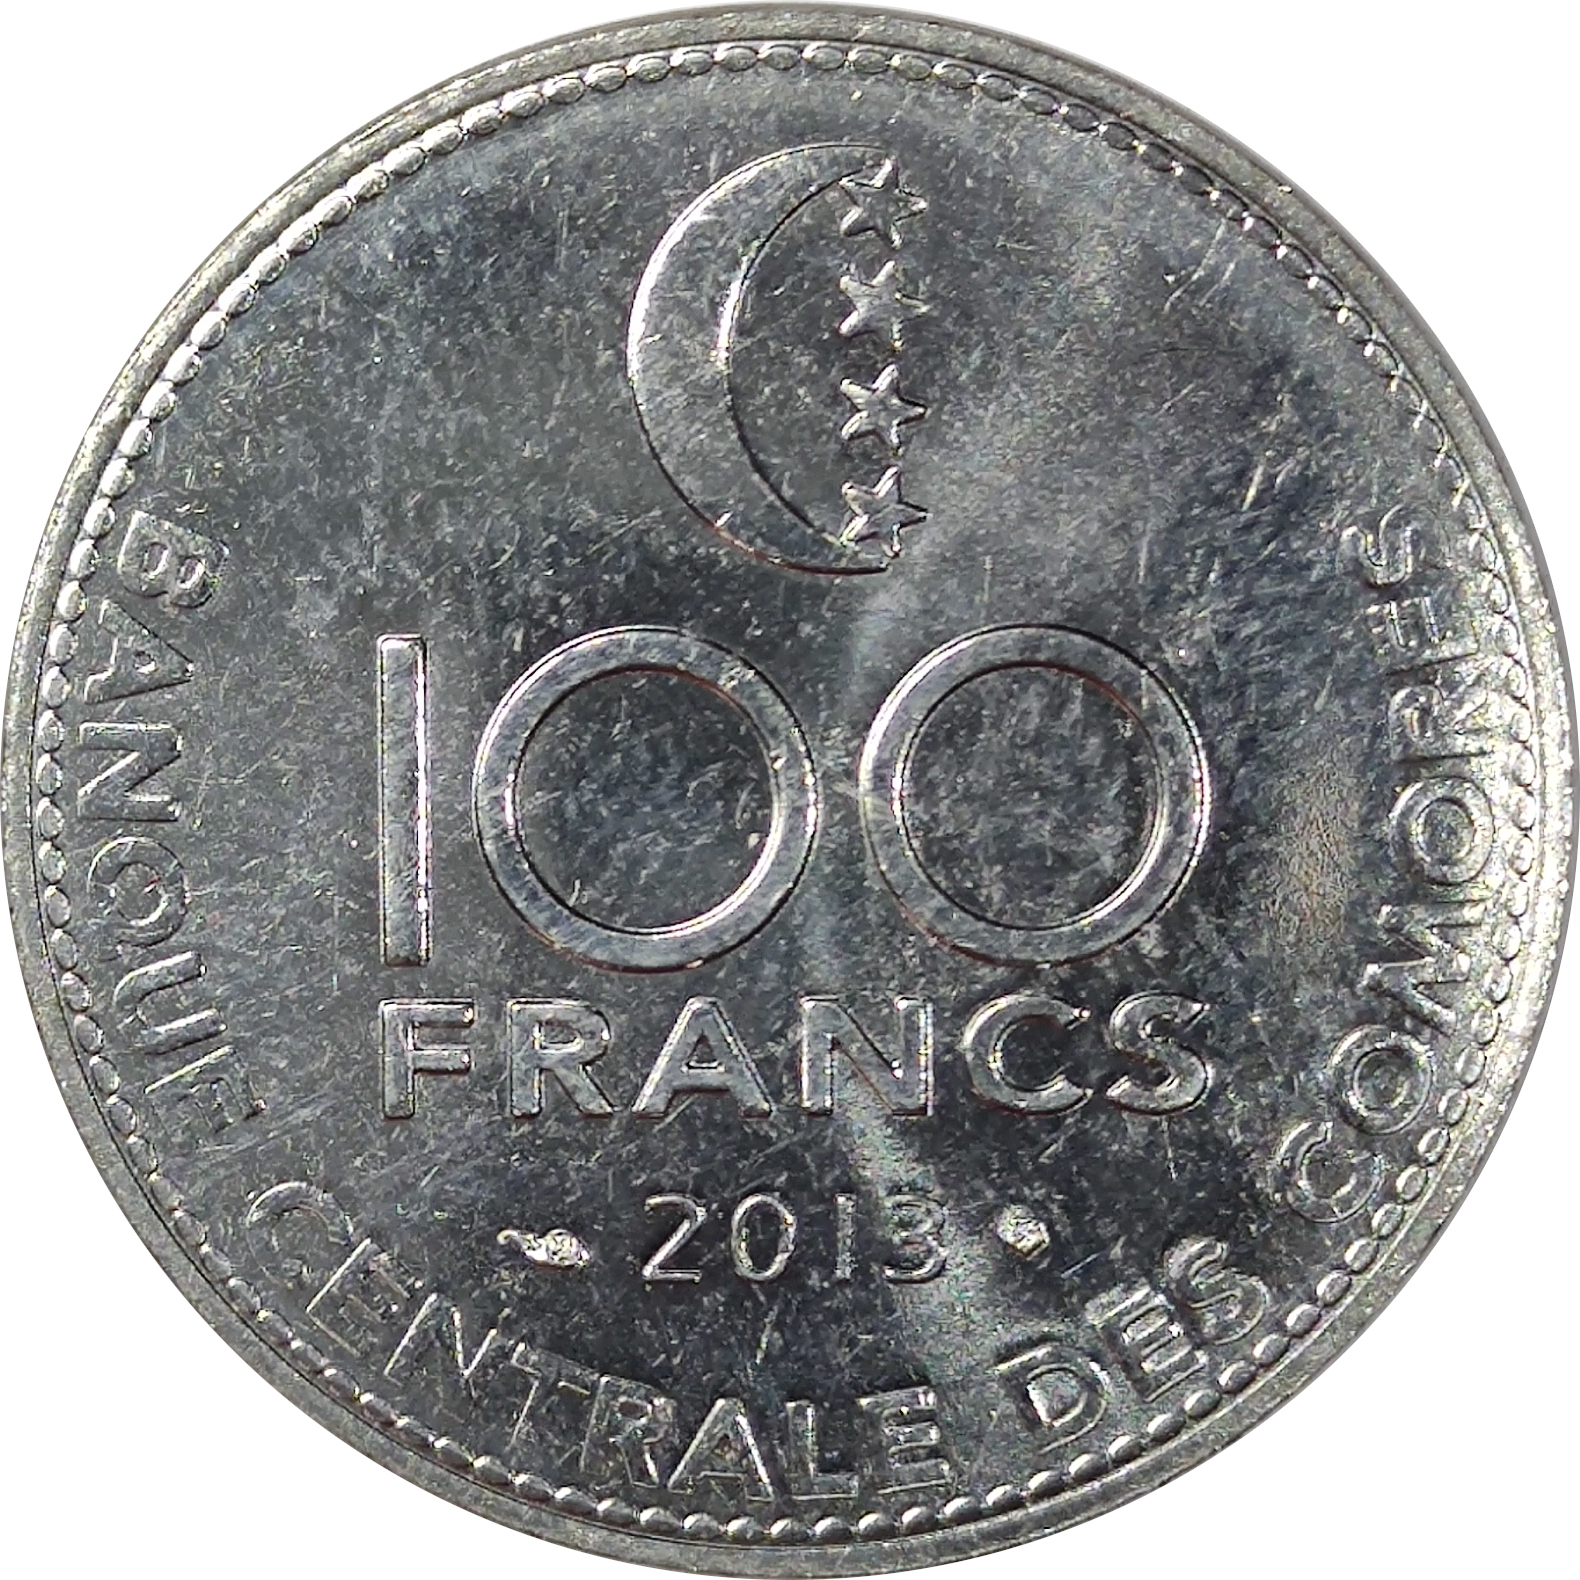 100 francs - Banque centrale